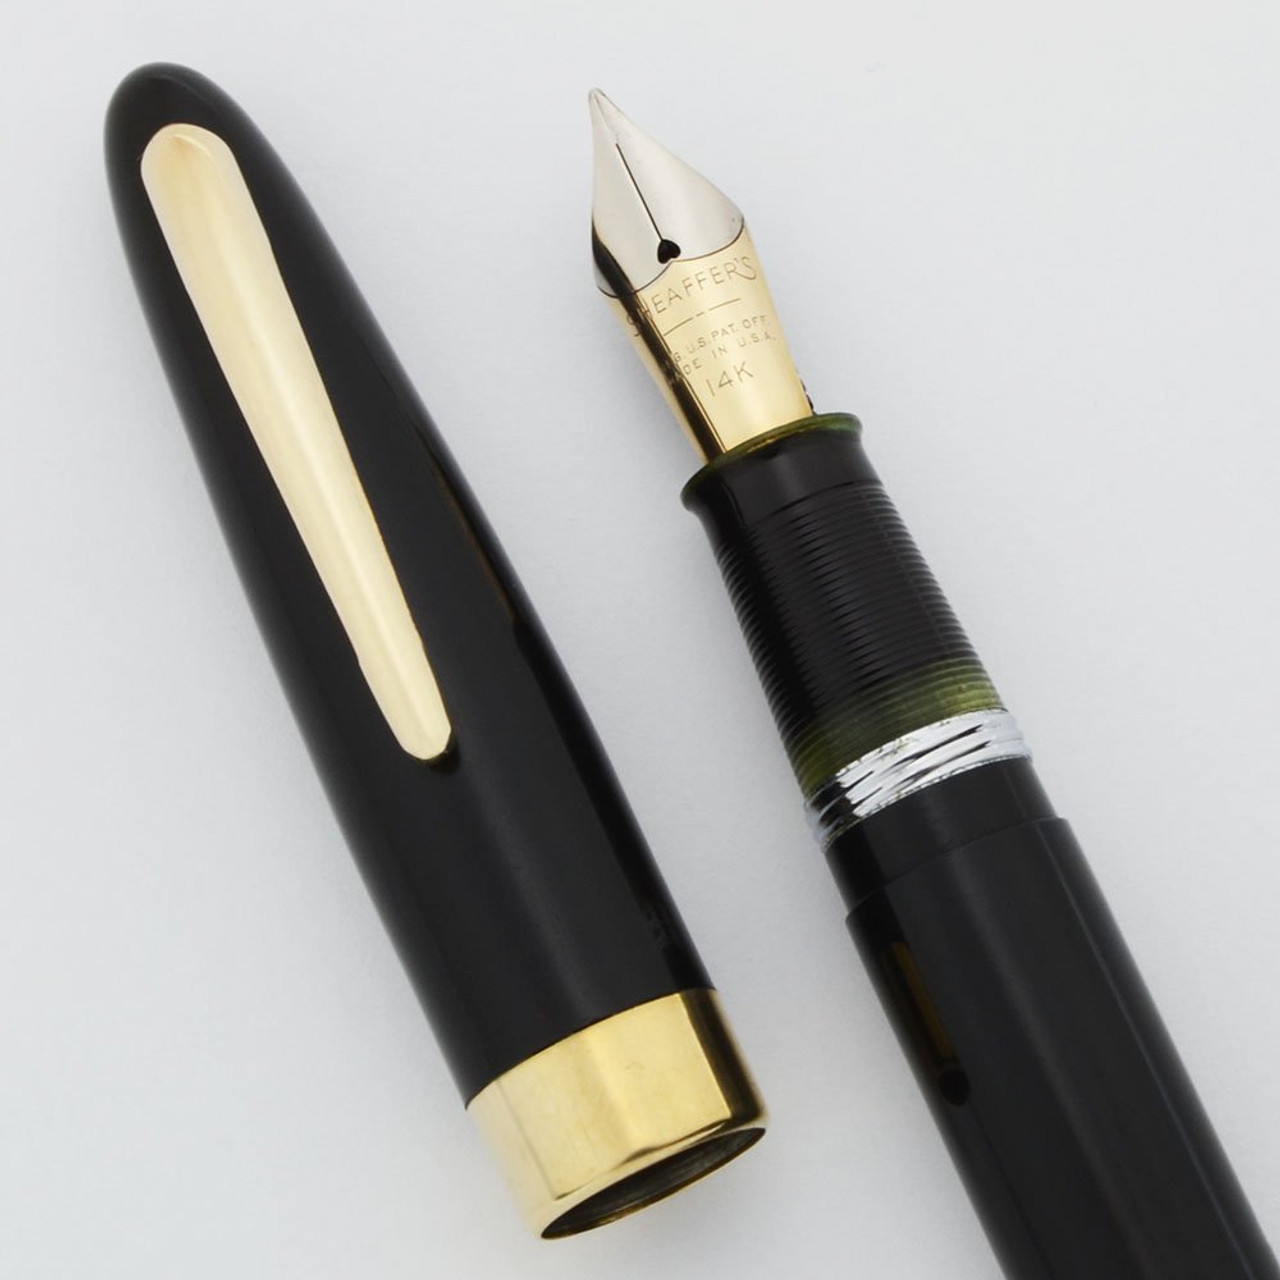 Sheaffer 875 Sovereign Fountain Pen - Black, Fat Vac-Fil, Medium-Fine 14k Open Nib (Superior, Restored)